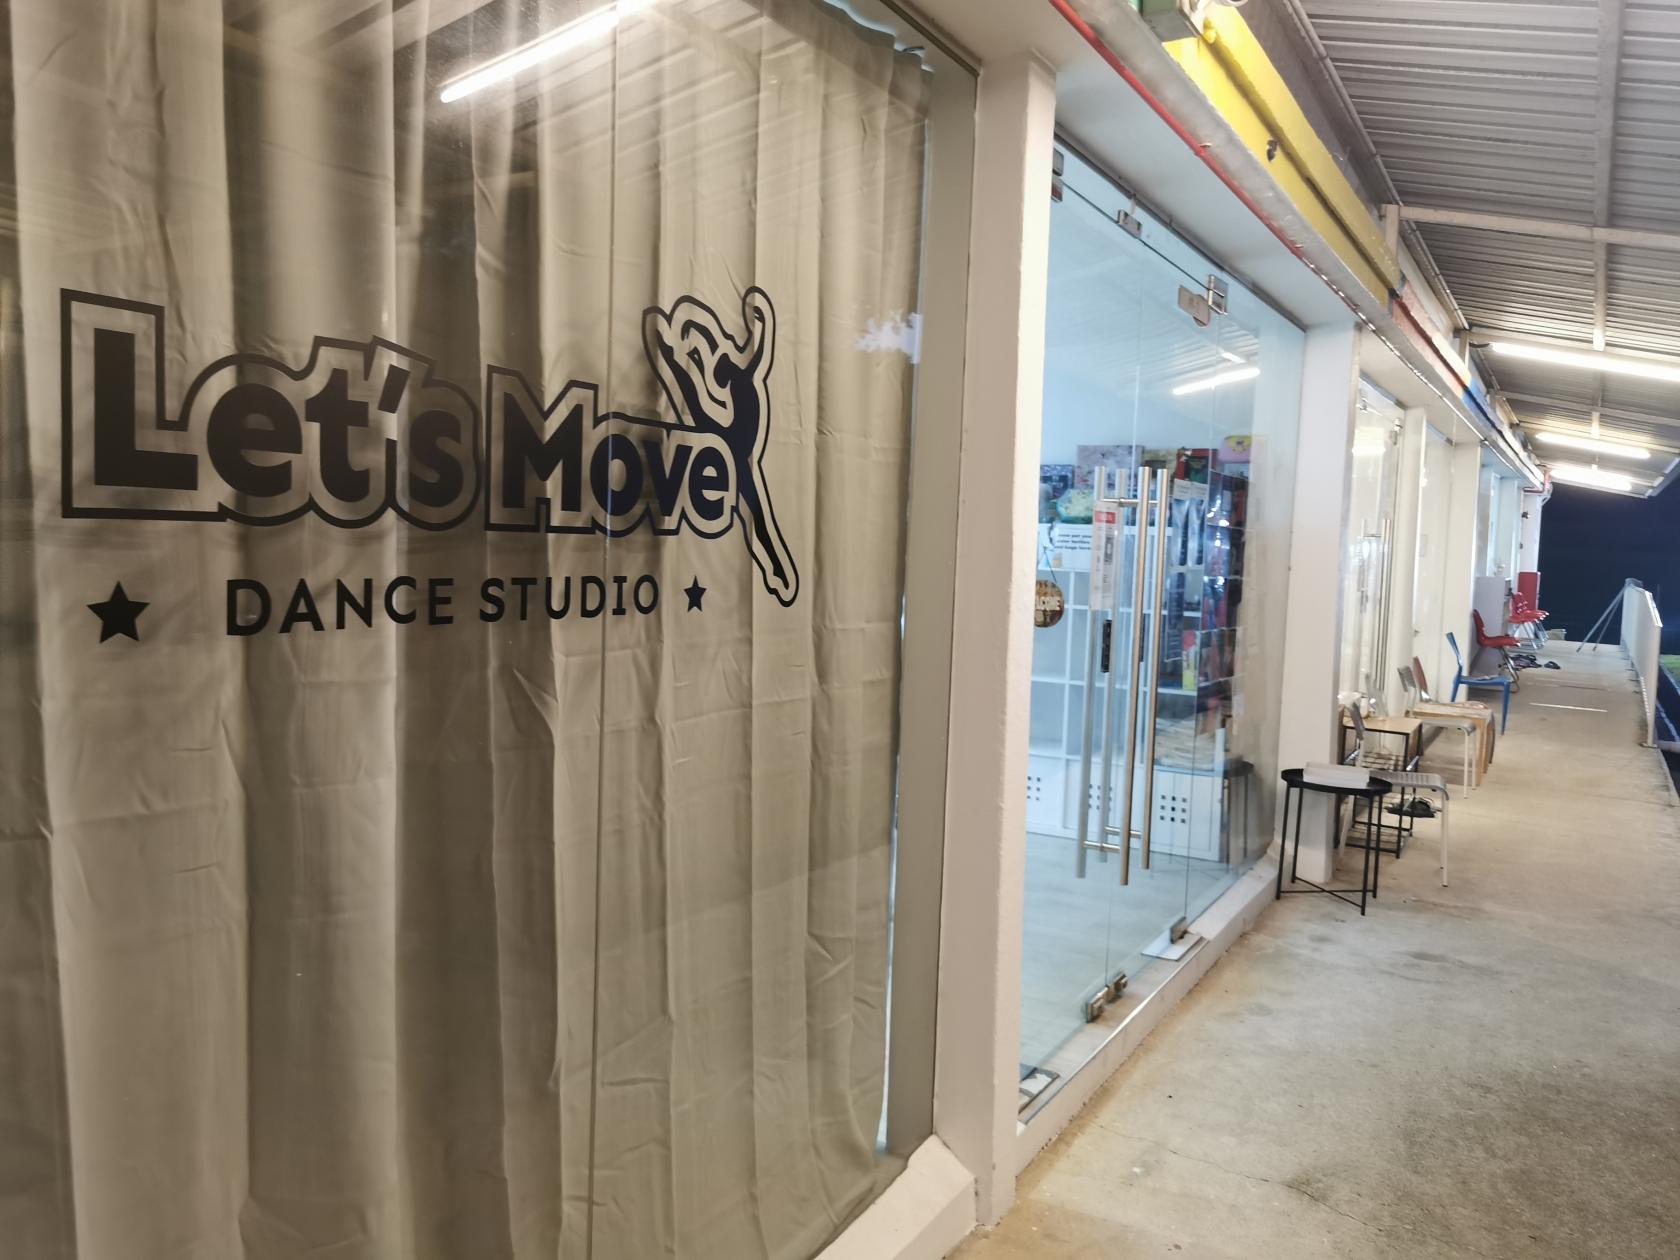 Let's Move Dance Studio - Event Venue Rental - Singapore 